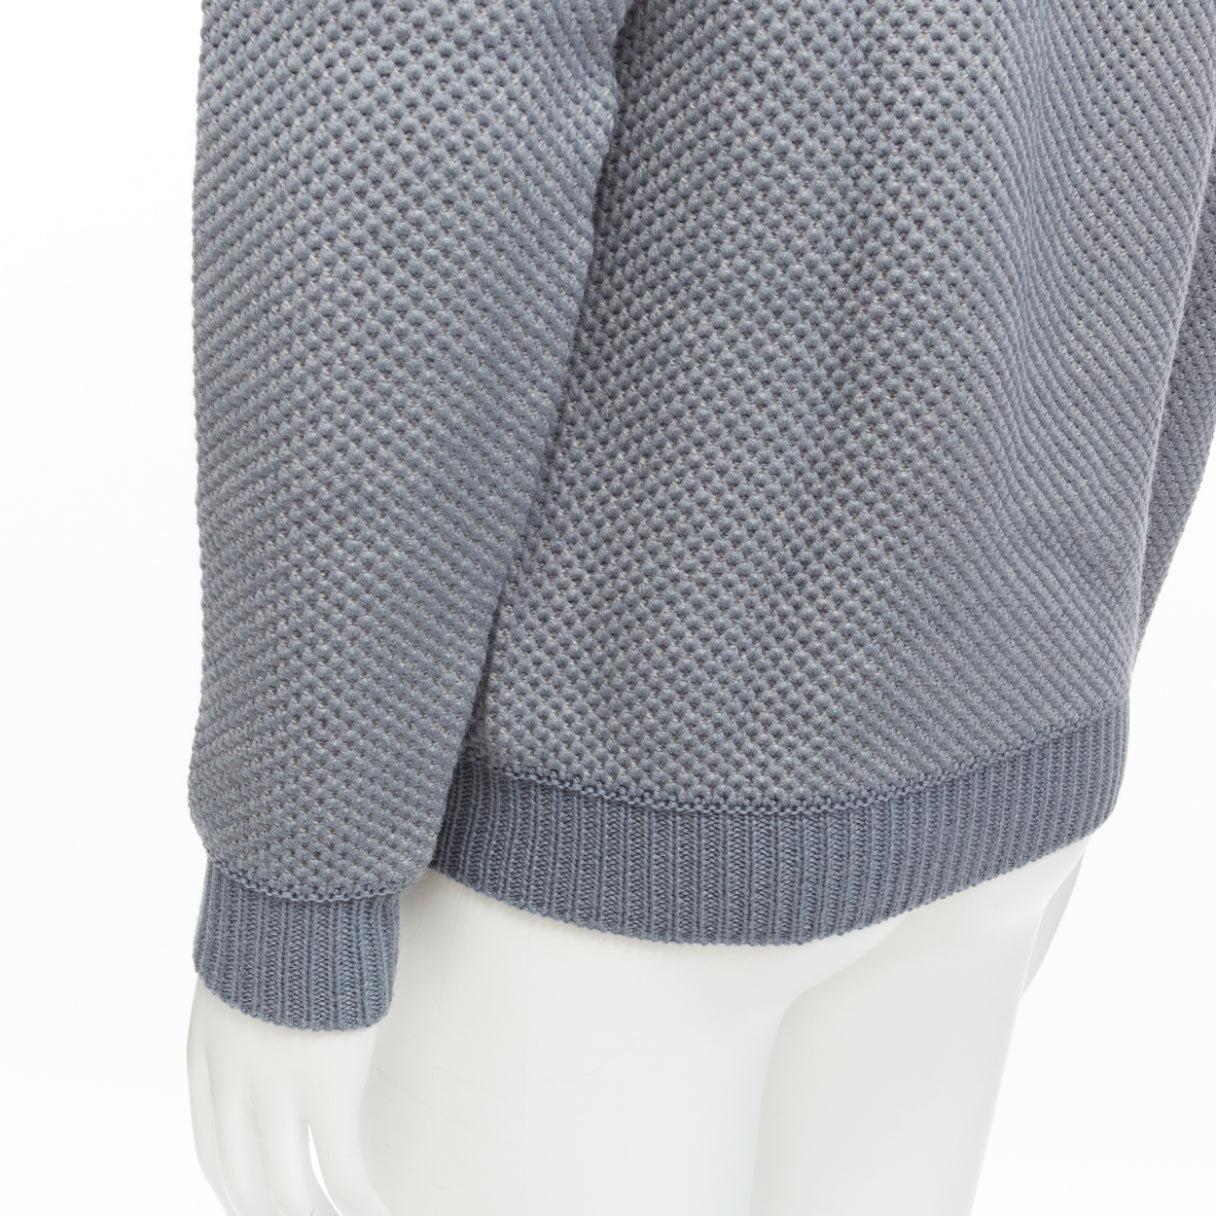 STEPHEN SCHNEIDER 100% textured waffle wool grey crew neck sweater Sz 4 L For Sale 2